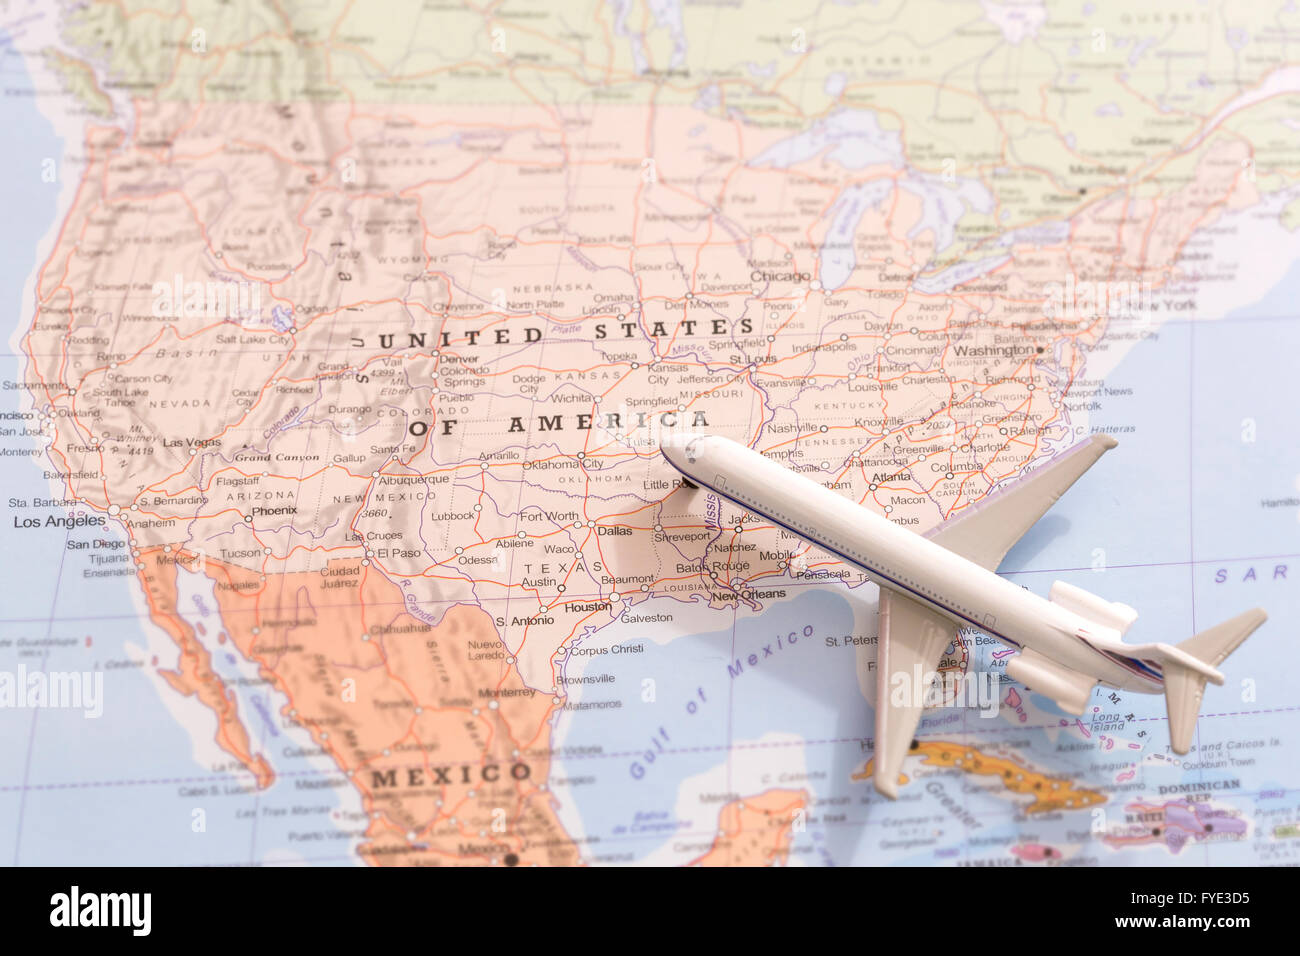 Miniatur mit einem Passagierflugzeug fliegen auf der Karte der Vereinigten Staaten von Amerika aus Süd-Ost. Konzeptbild für Reisen und Stockfoto